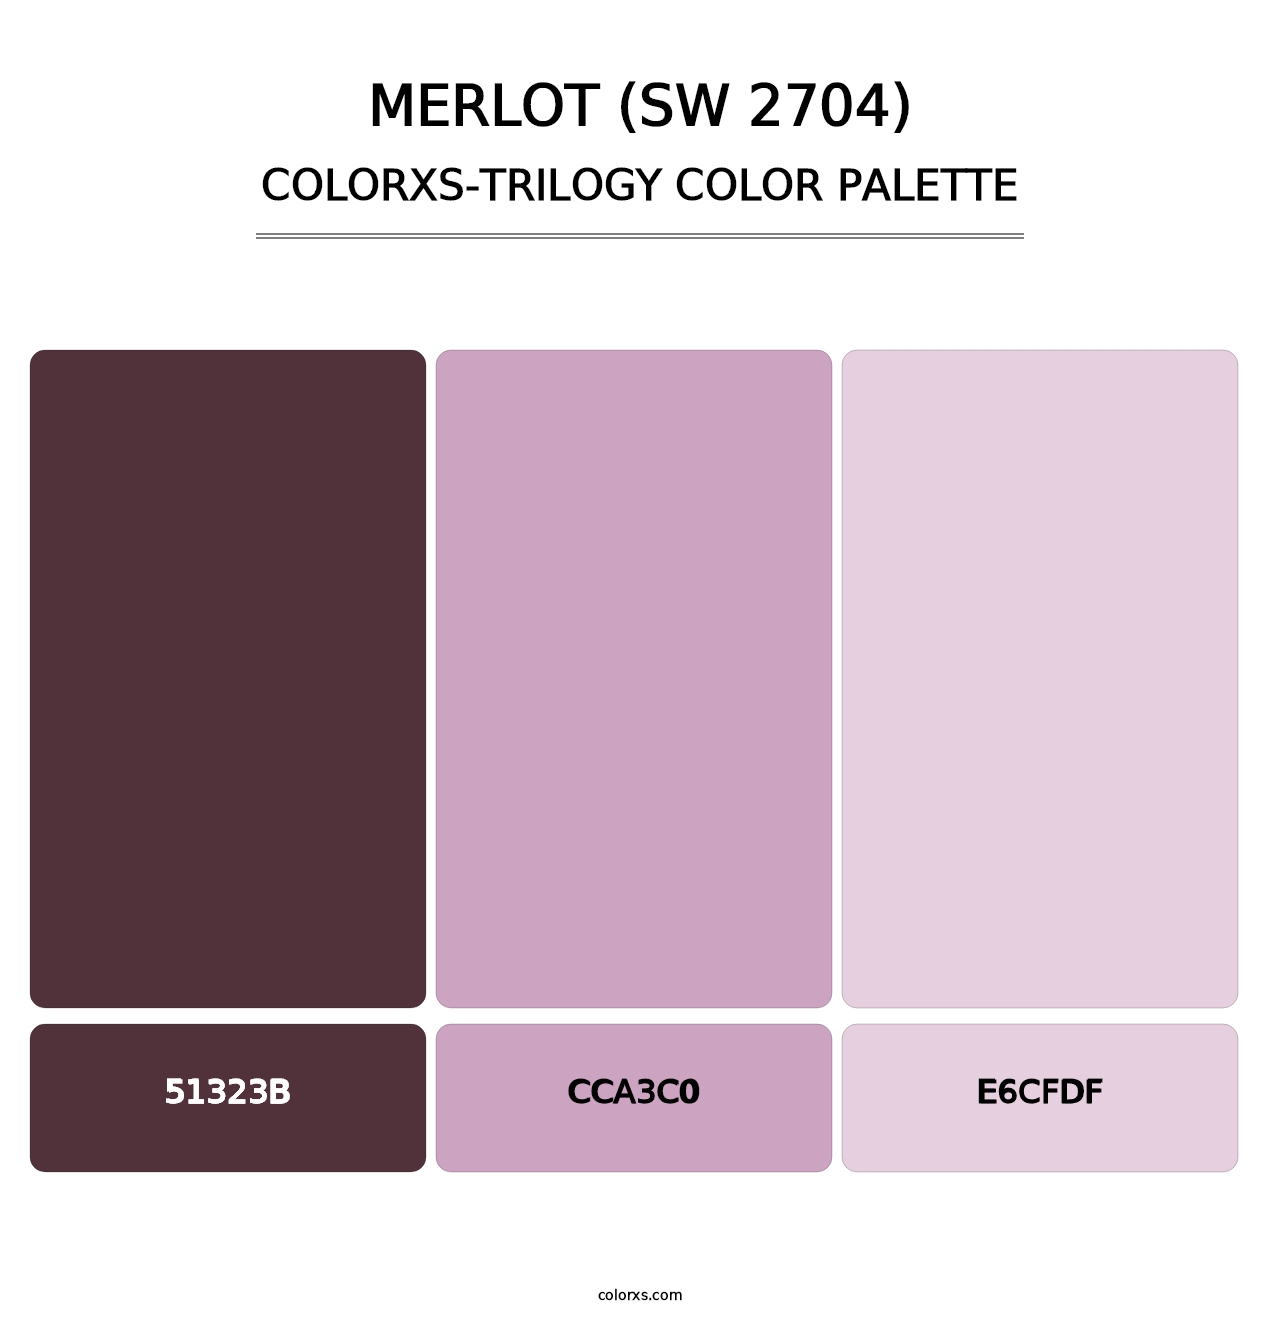 Merlot (SW 2704) - Colorxs Trilogy Palette